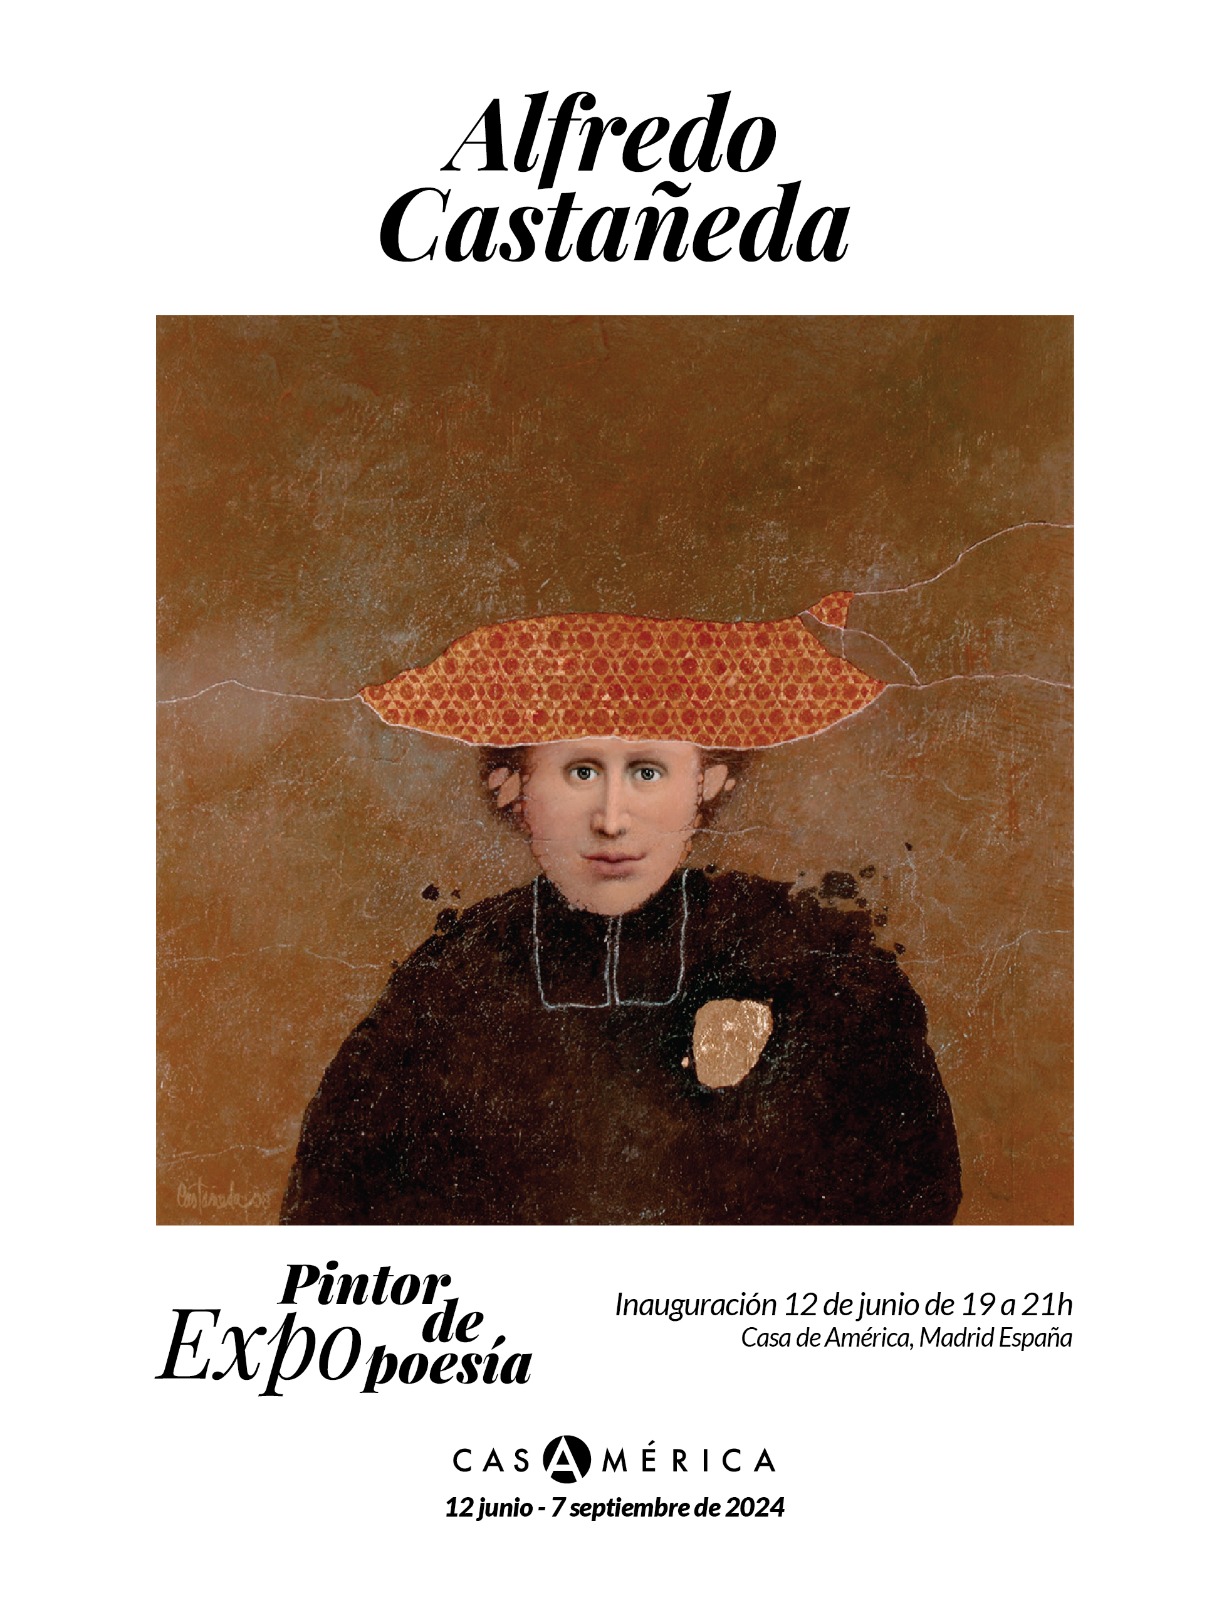 "Alfredo Castañeda, pintor de poesía" se inaugura el próximo 12 de junio en Casa de América